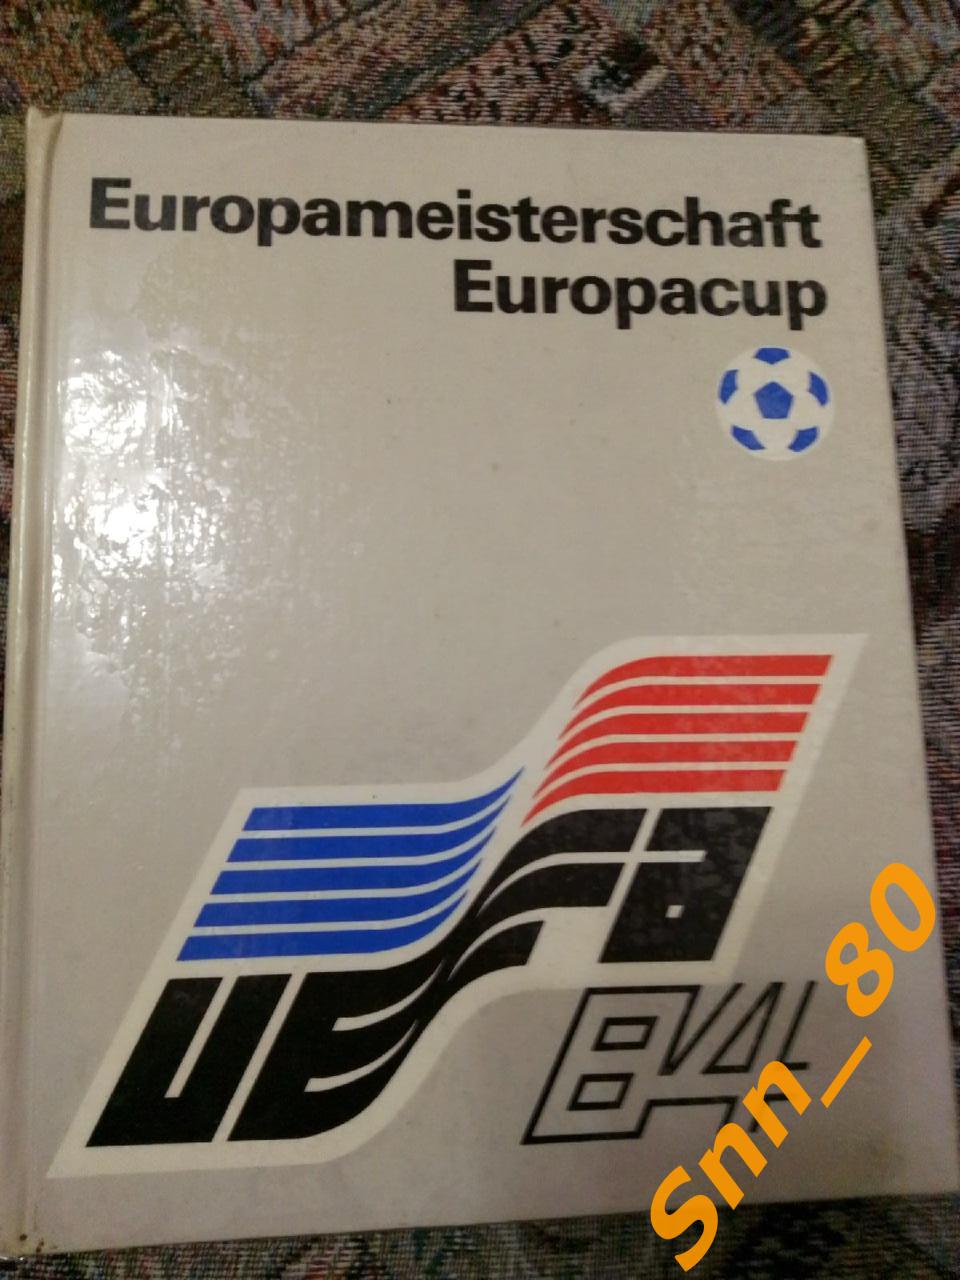 6 Europameisterschaft Europacup Чемпионат Европы по футболу Berlin DDR 1984 31,8